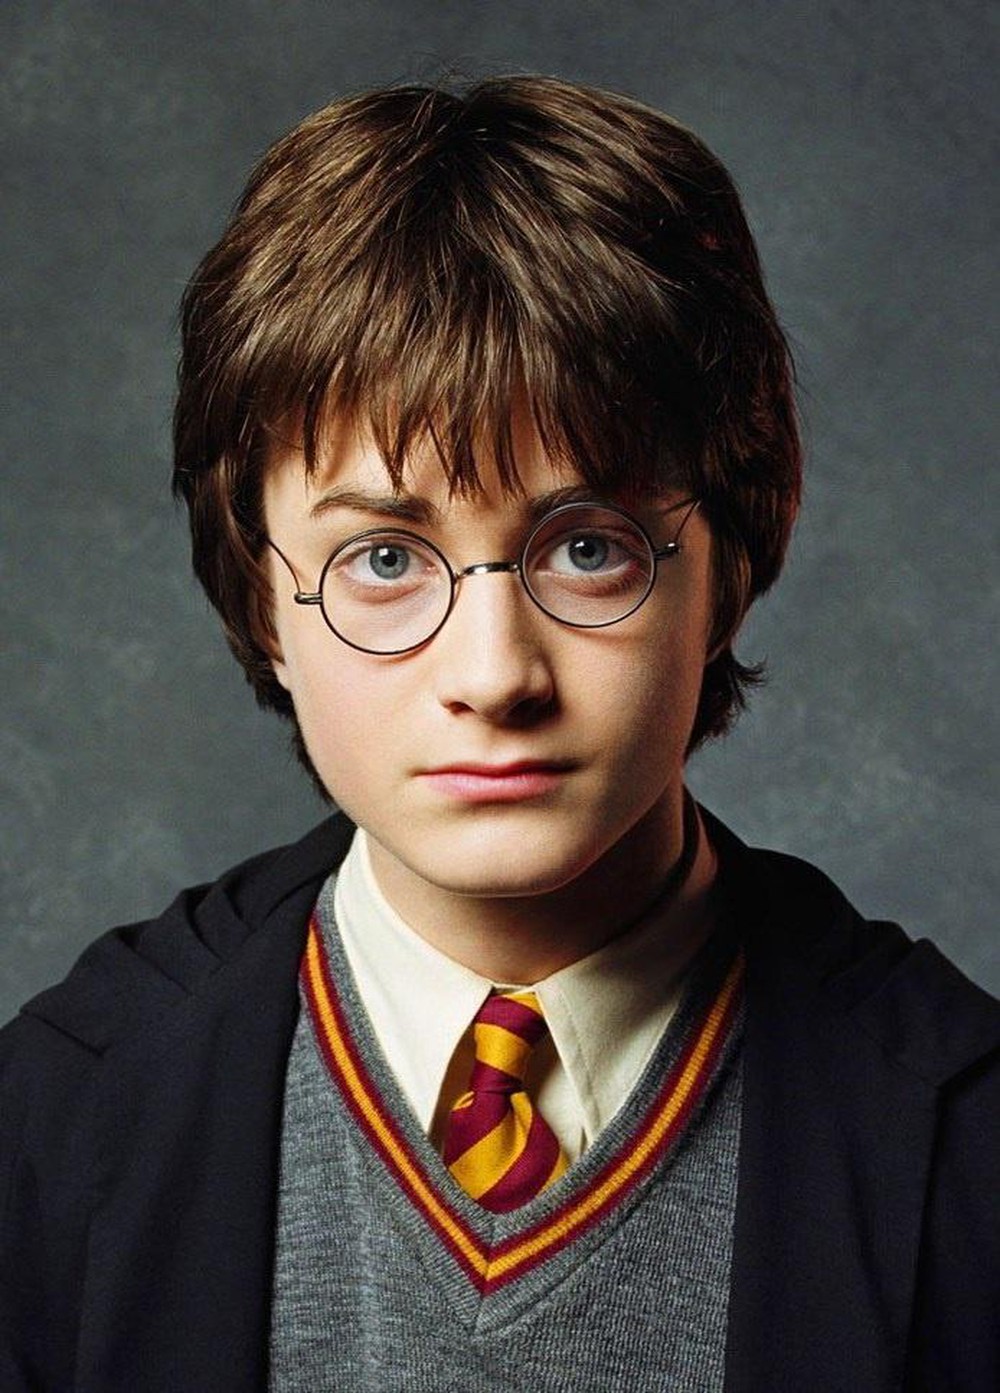 Tạo hình của Radcliffe trong Harry Potter cùng đôi mắt xanh biếc hút hồn